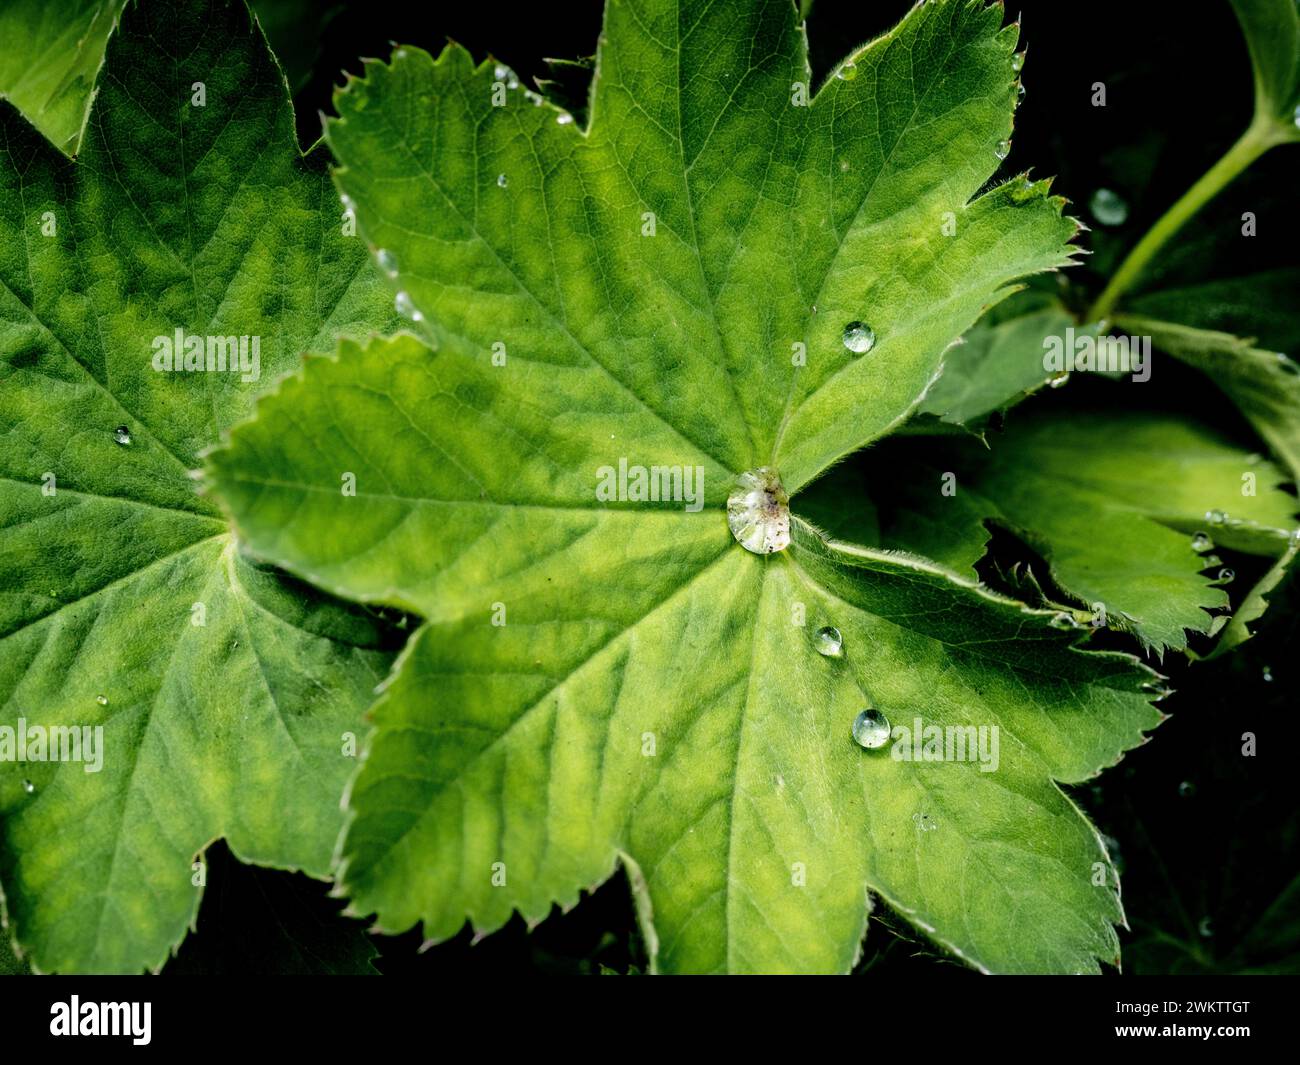 Diamantartige Wassertropfen auf den fächerförmigen Blättern von Alchemilla Mollis, die in einem britischen Garten wachsen Stockfoto